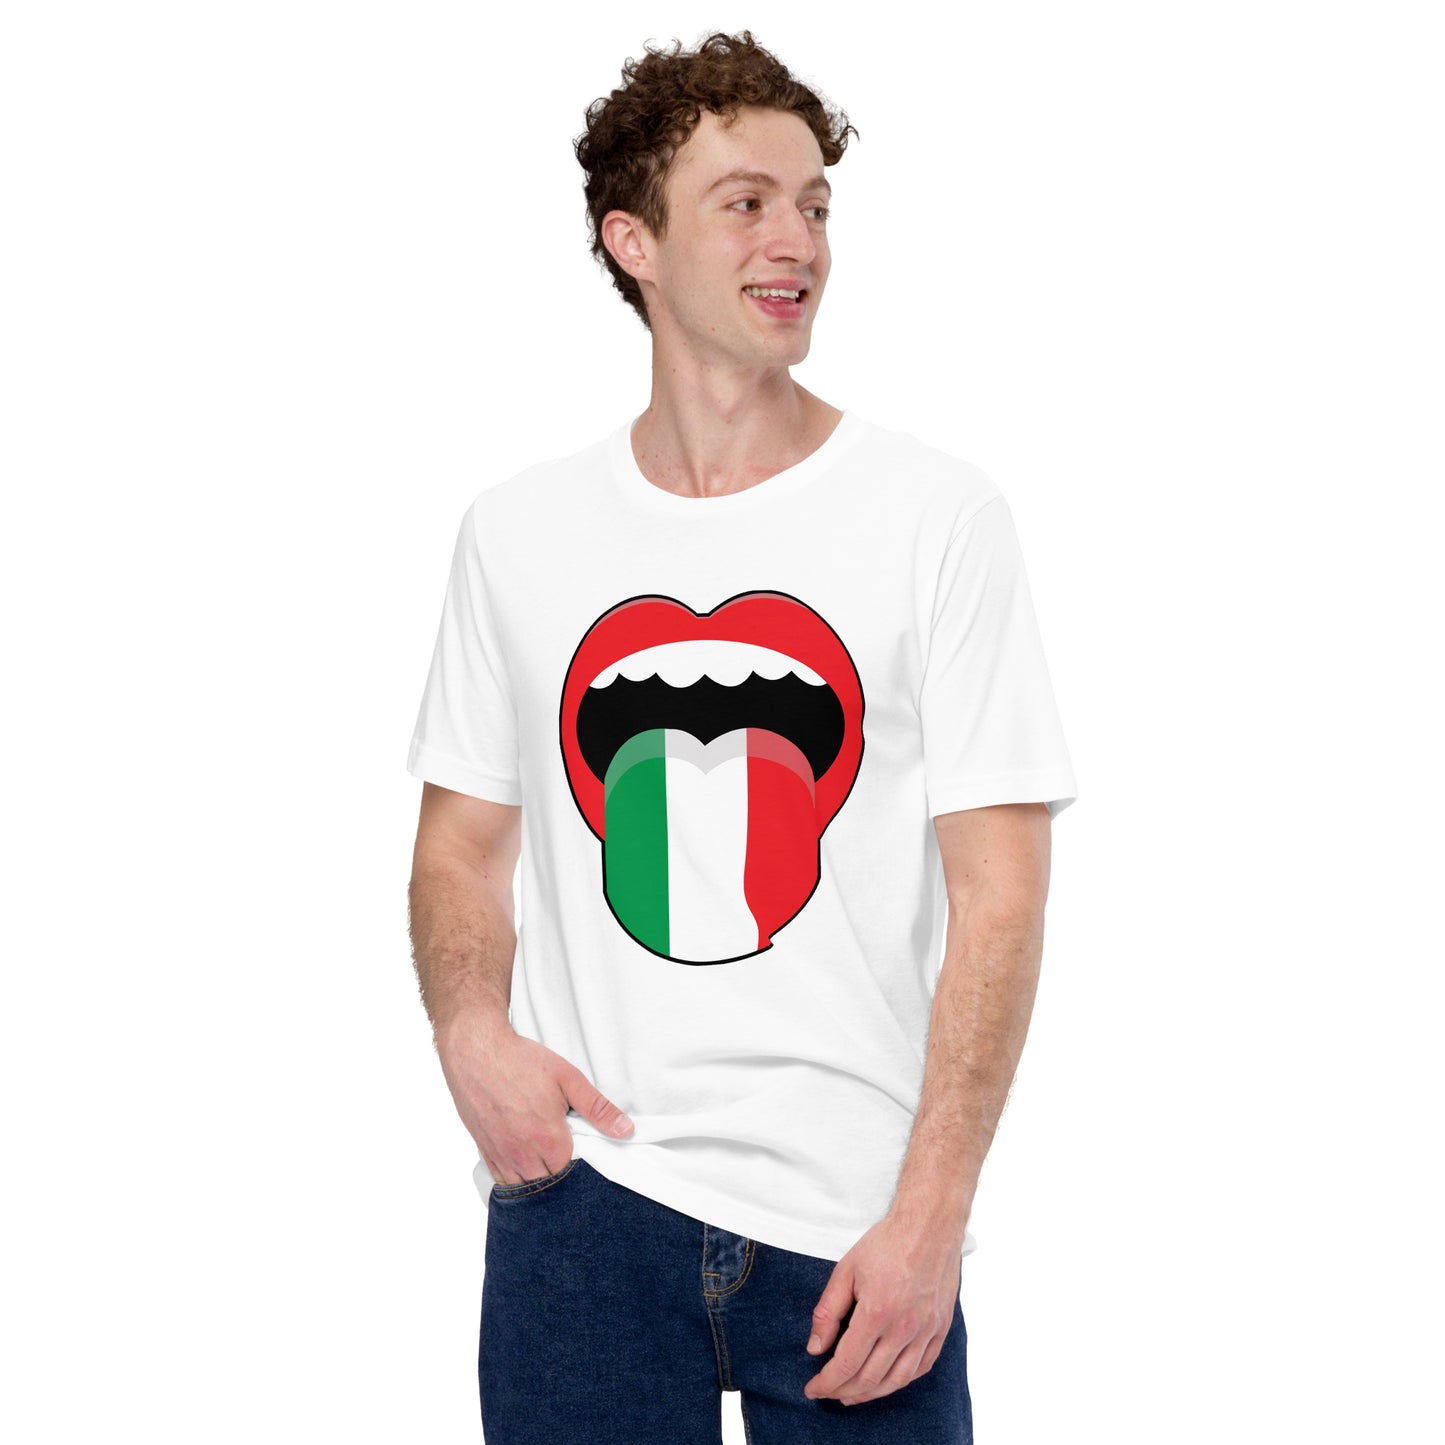 Unisex t-shirt - Italian Language